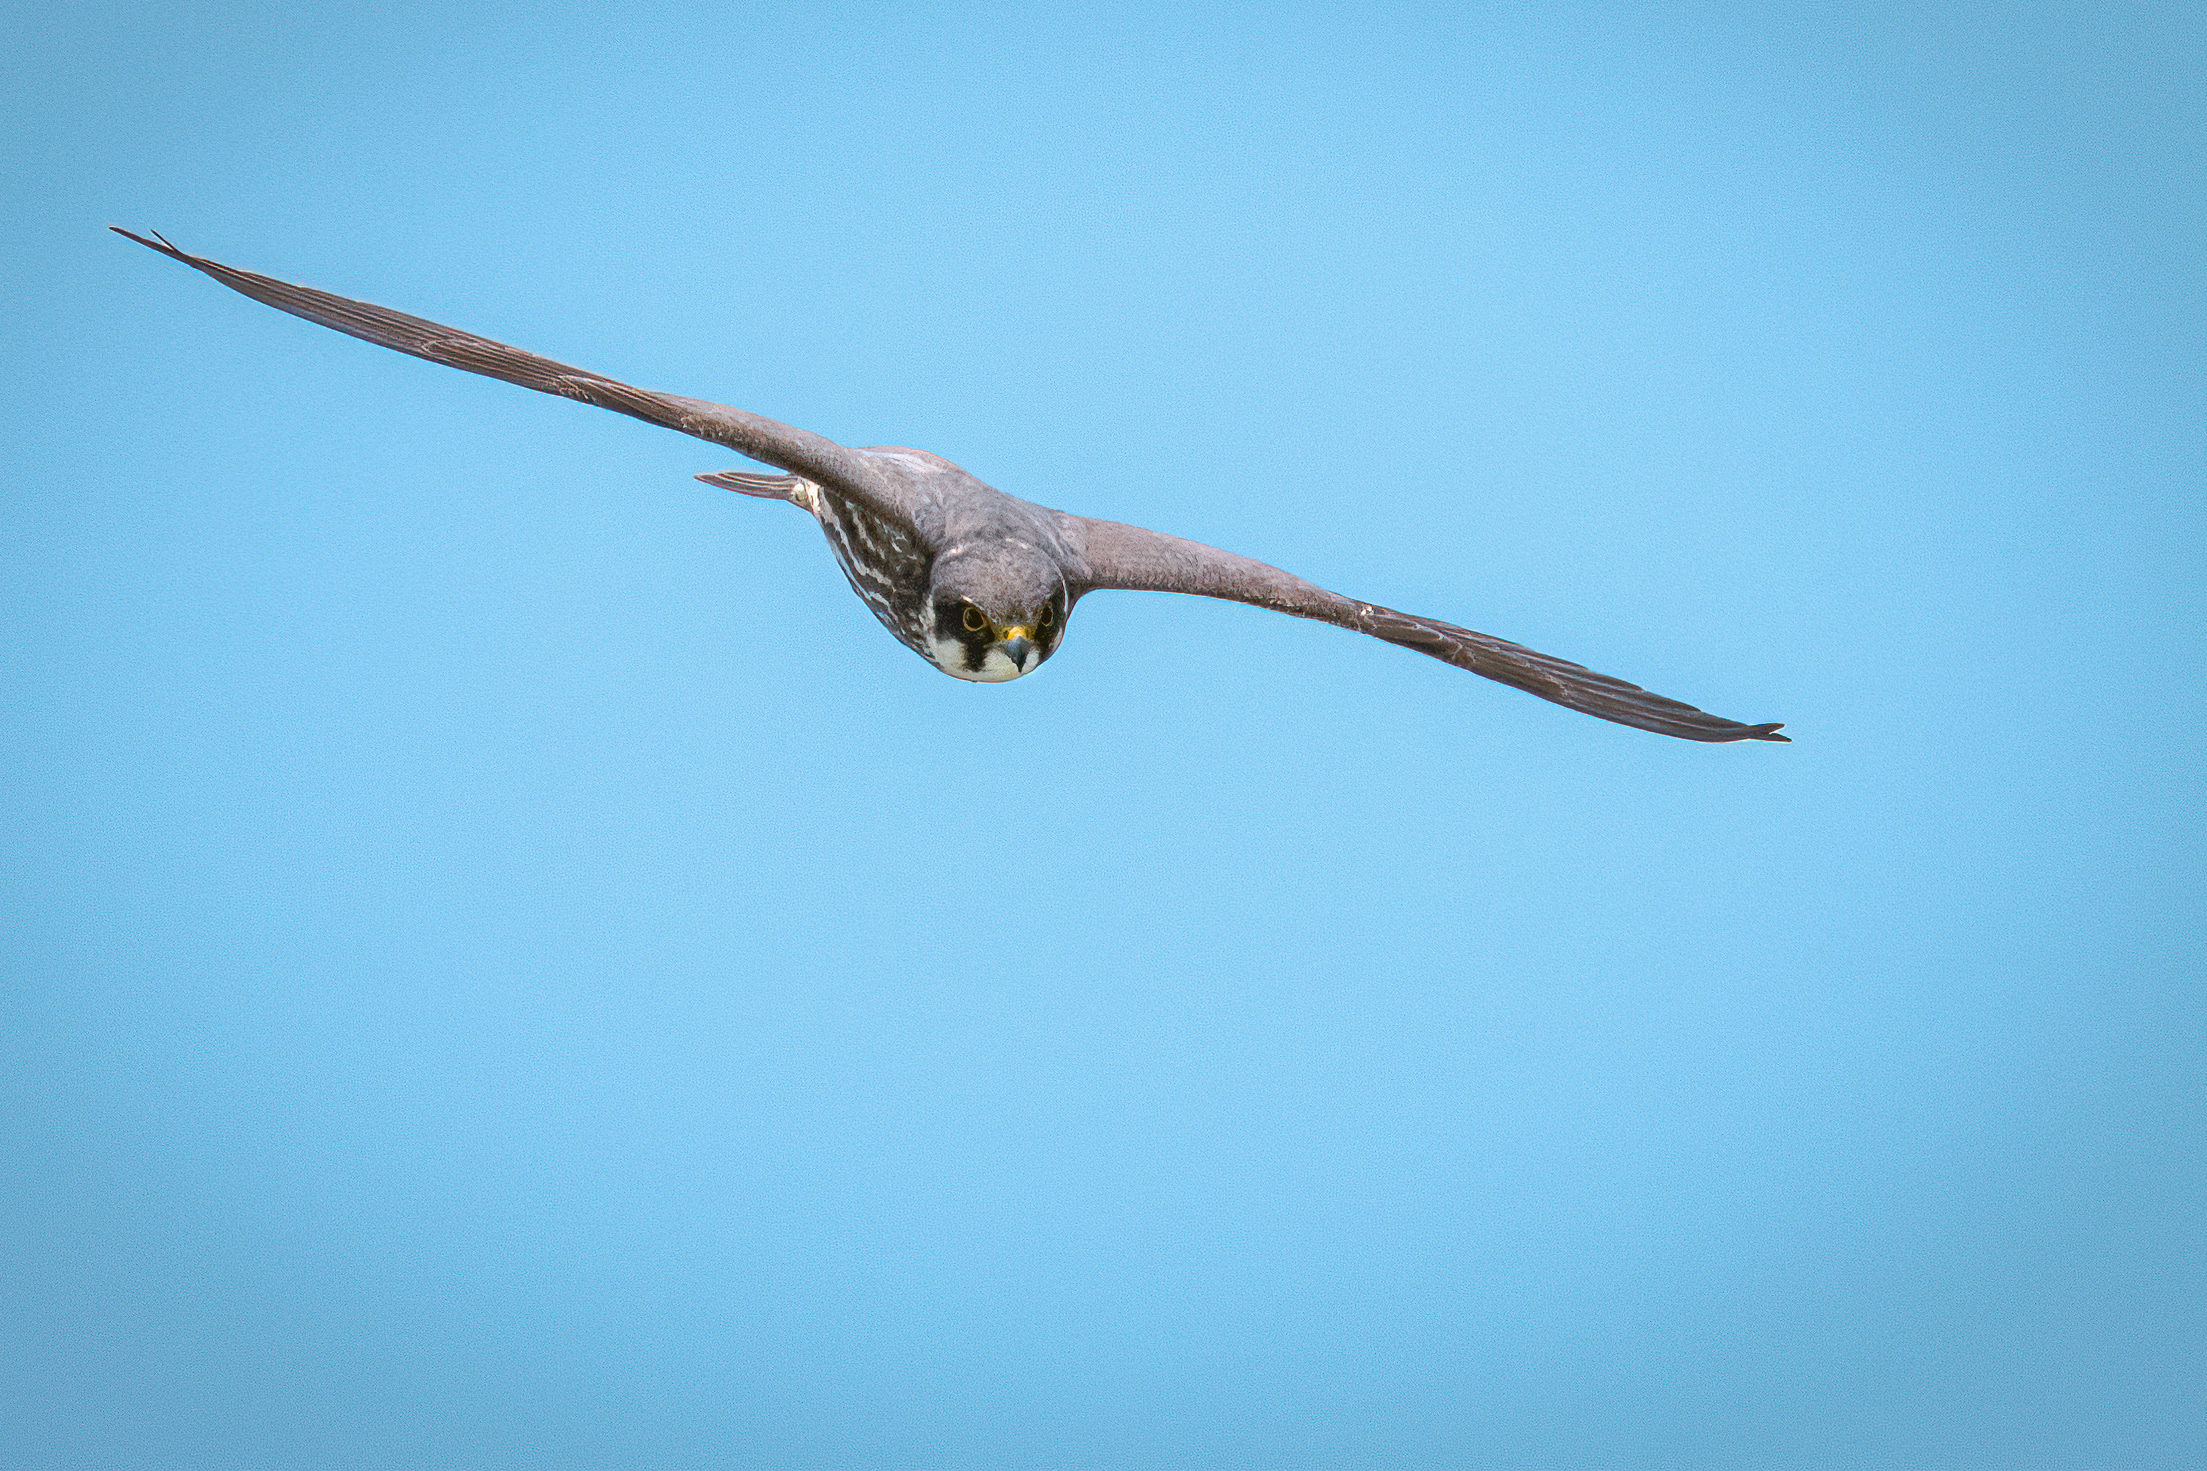 Falco Lodolaio in flight...